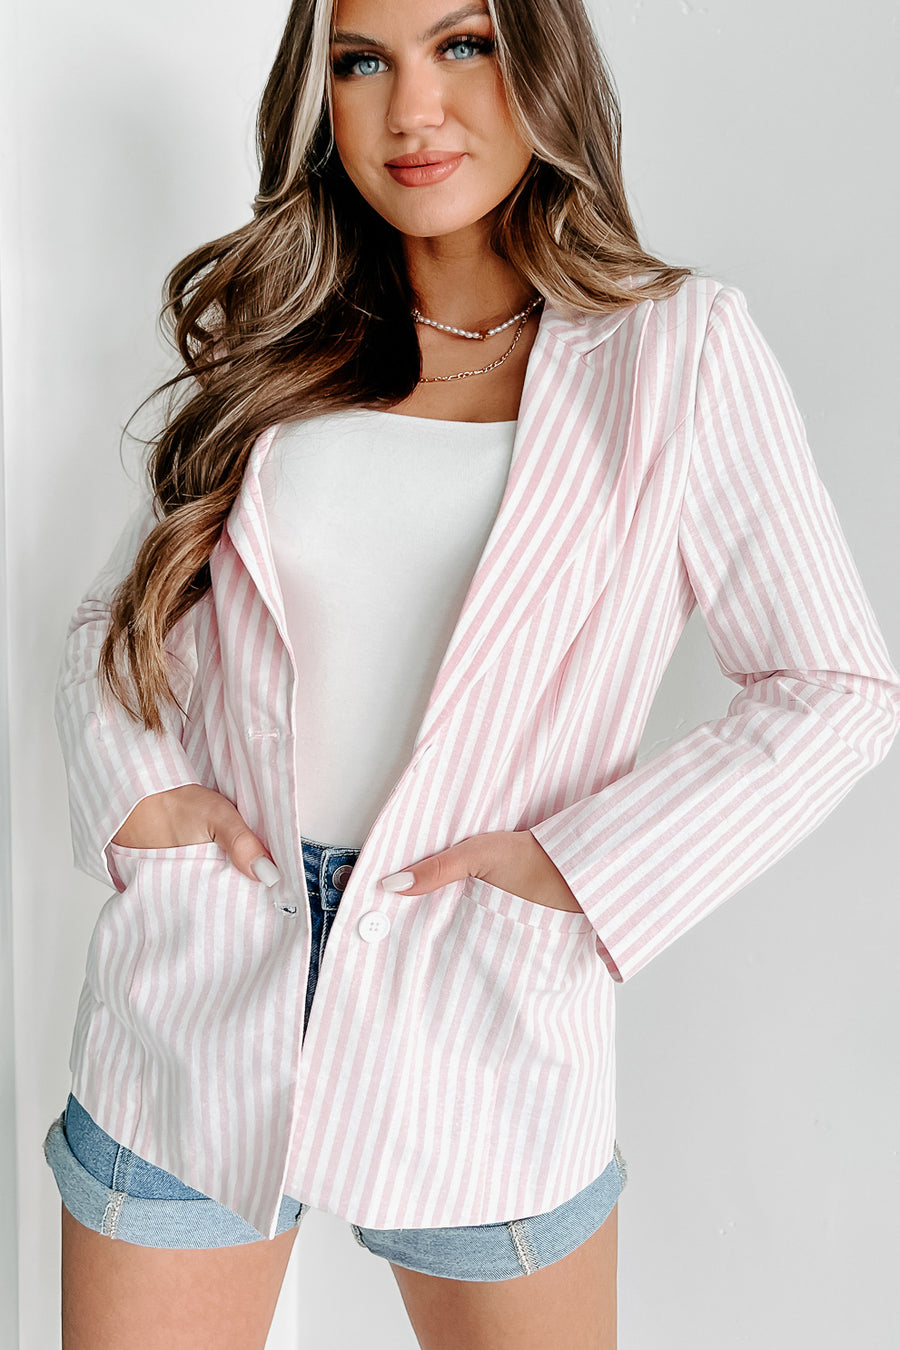 She Suits & Scores Striped Blazer (Pink) - NanaMacs